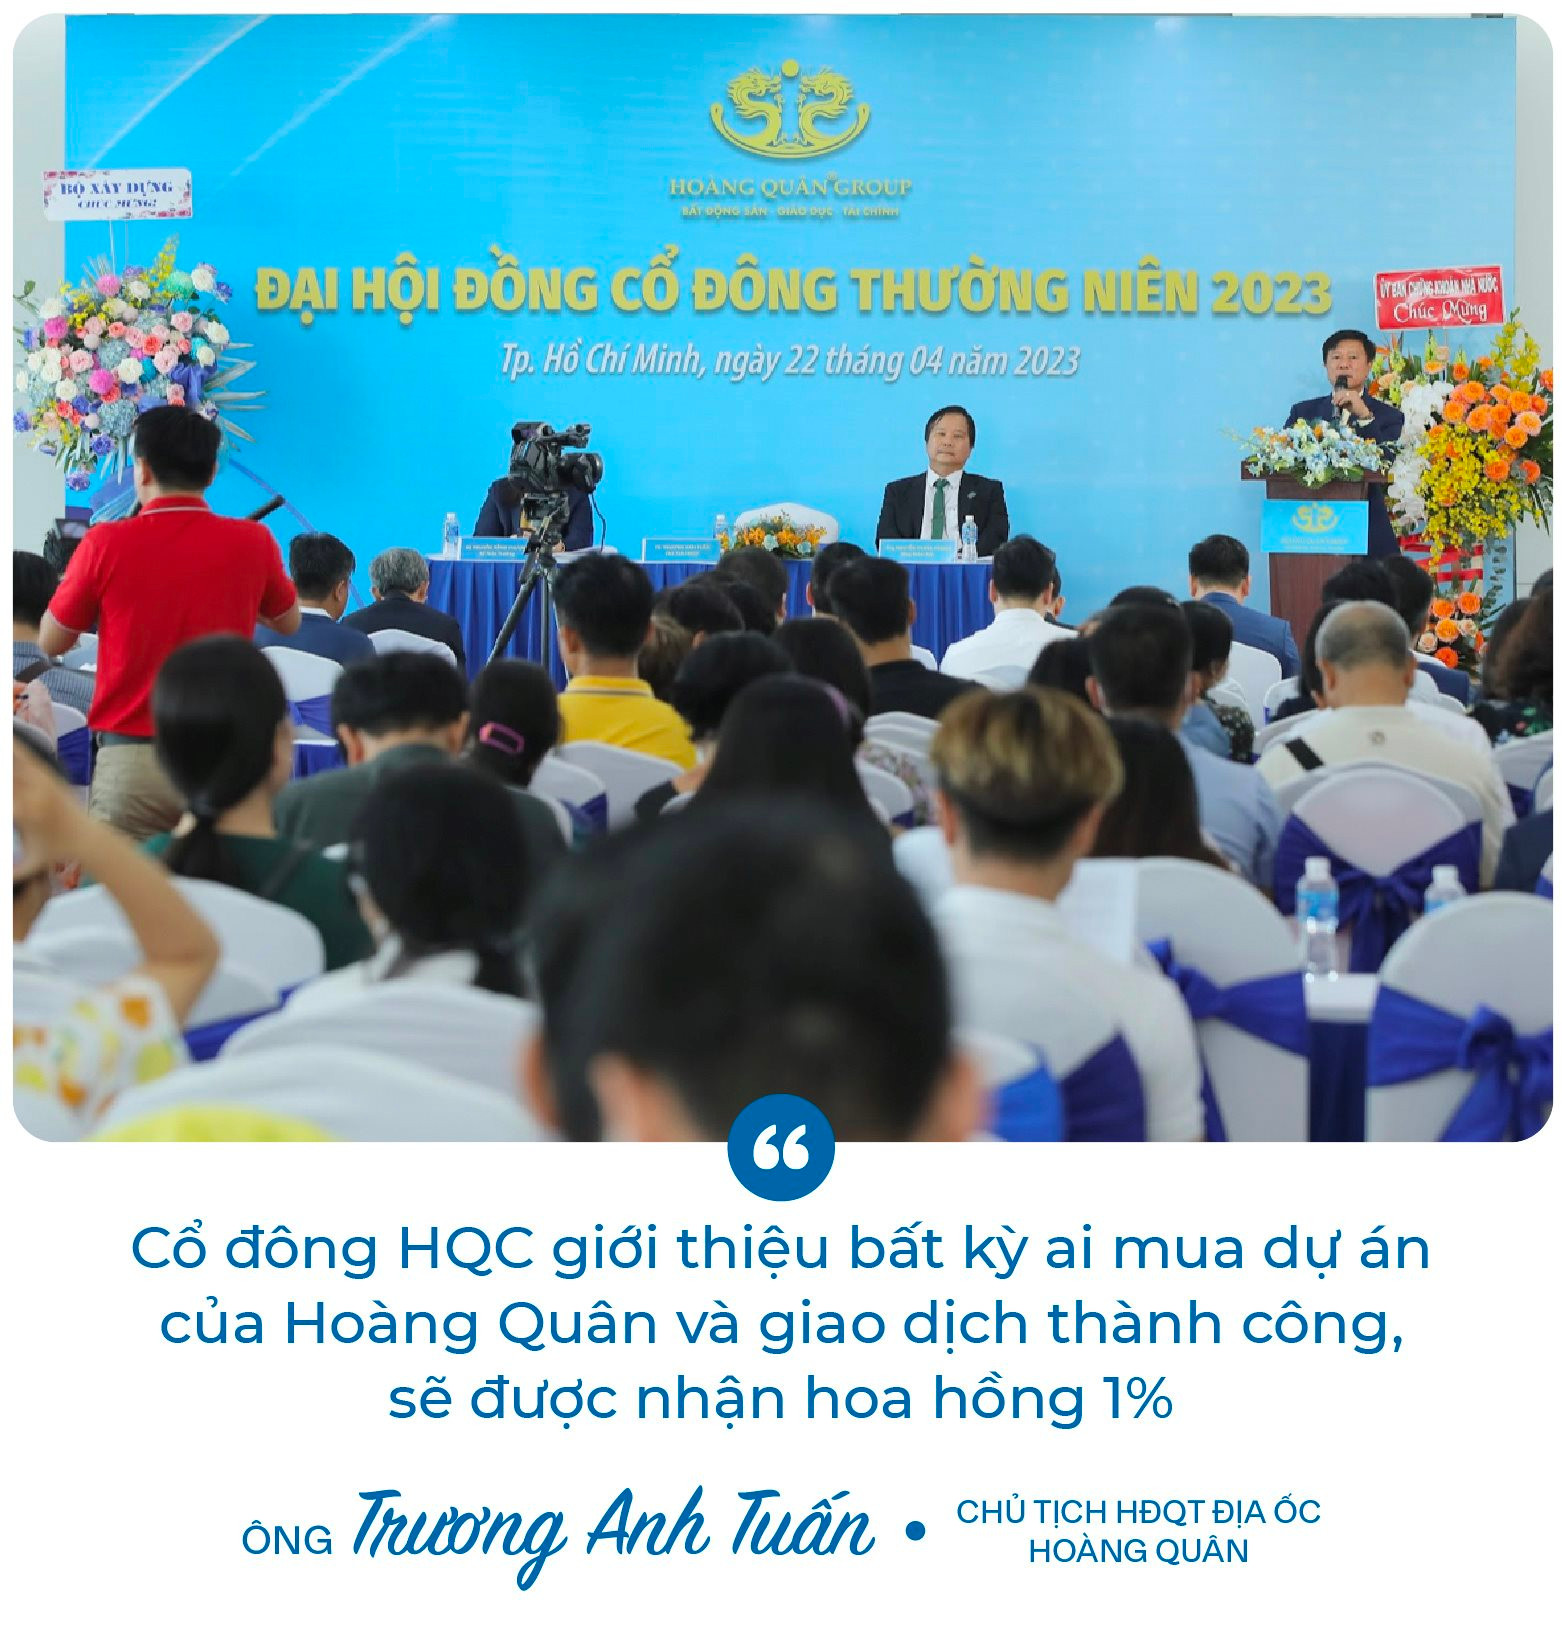 Chủ tịch Trương Anh Tuấn: ﻿“8 năm rồi Hoàng Quân (HQC) không đạt kế hoạch, và tôi cũng nói thật năm nay chưa chắc đạt” - Ảnh 4.